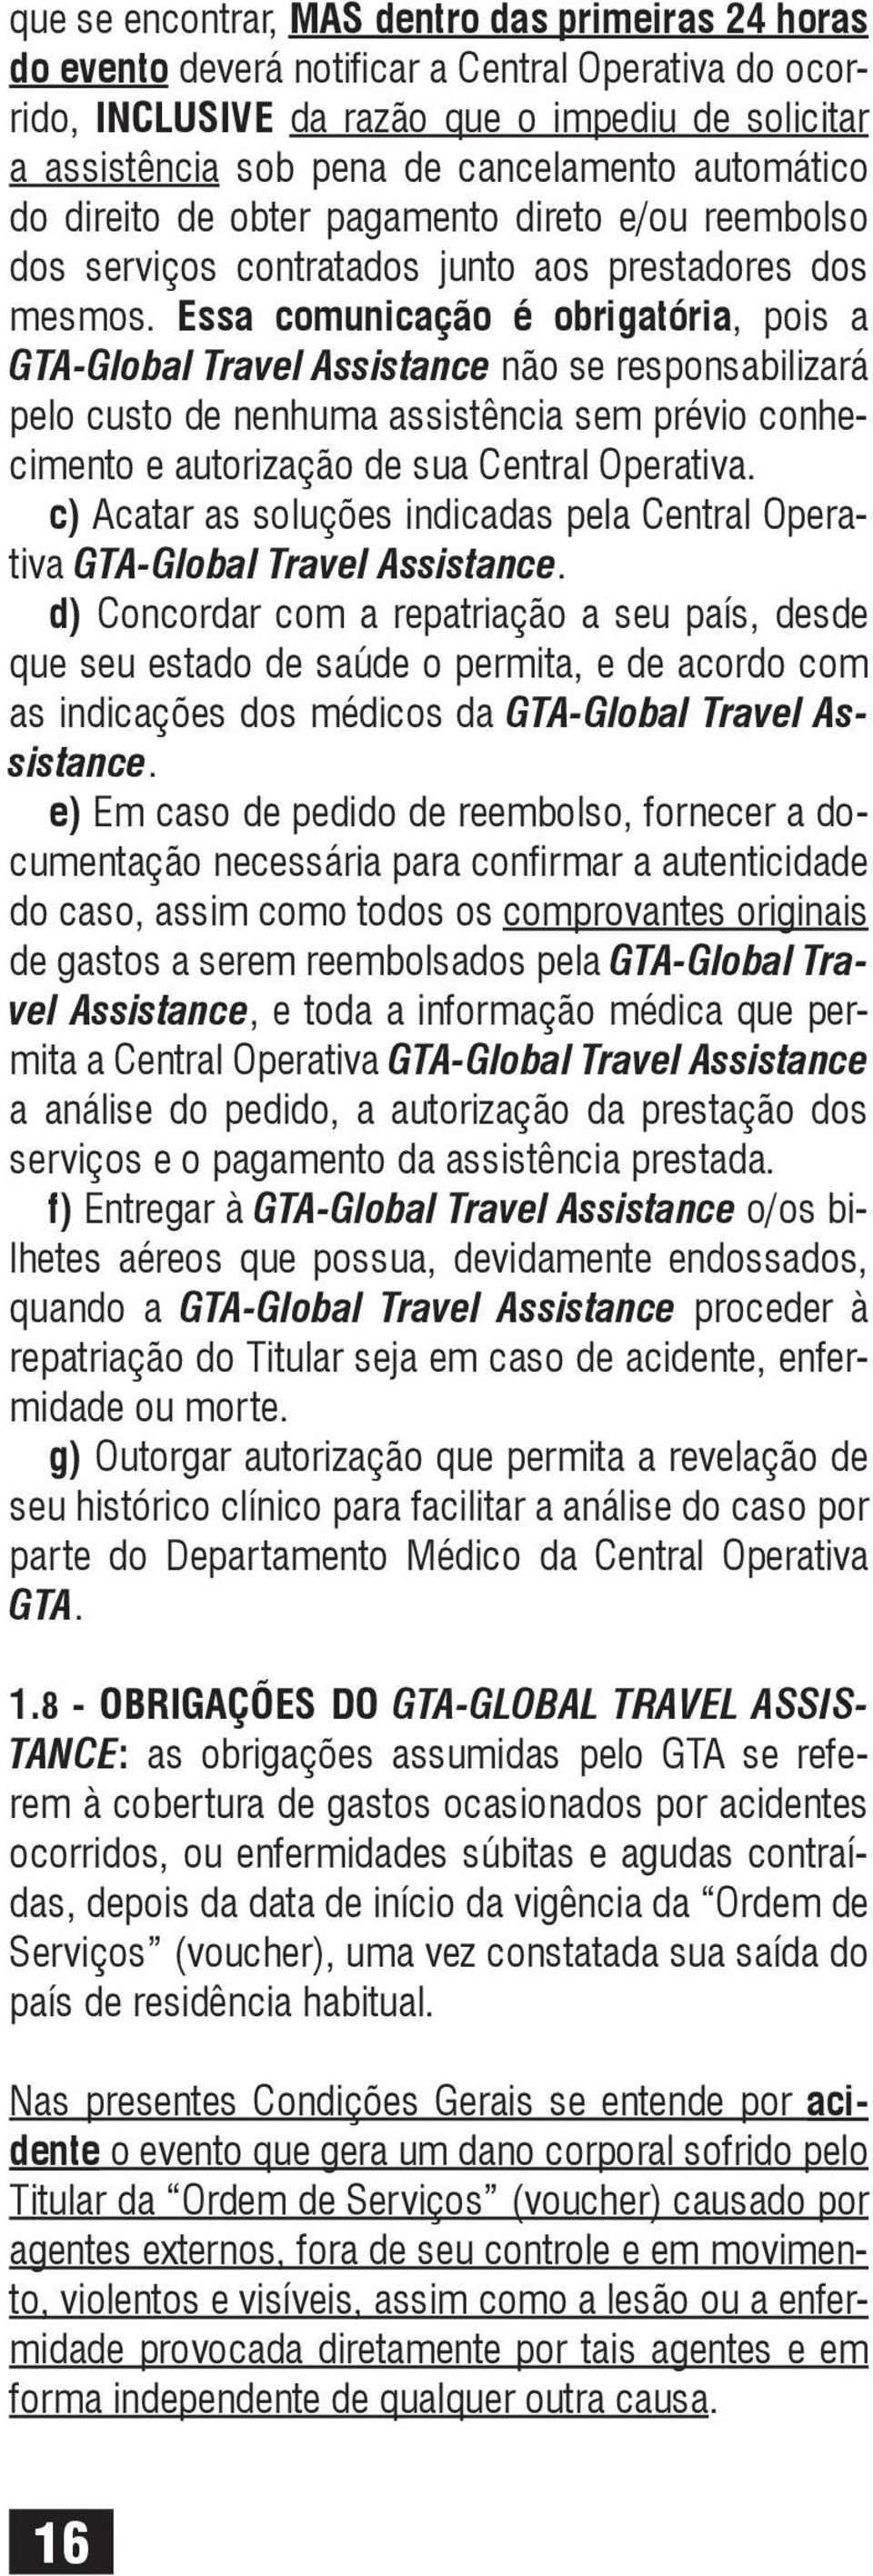 Essa comunicação é obrigatória, pois a GTA-Global Travel Assistance não se responsabilizará pelo custo de nenhuma assistência sem prévio conhecimento e autorização de sua Central Operativa.